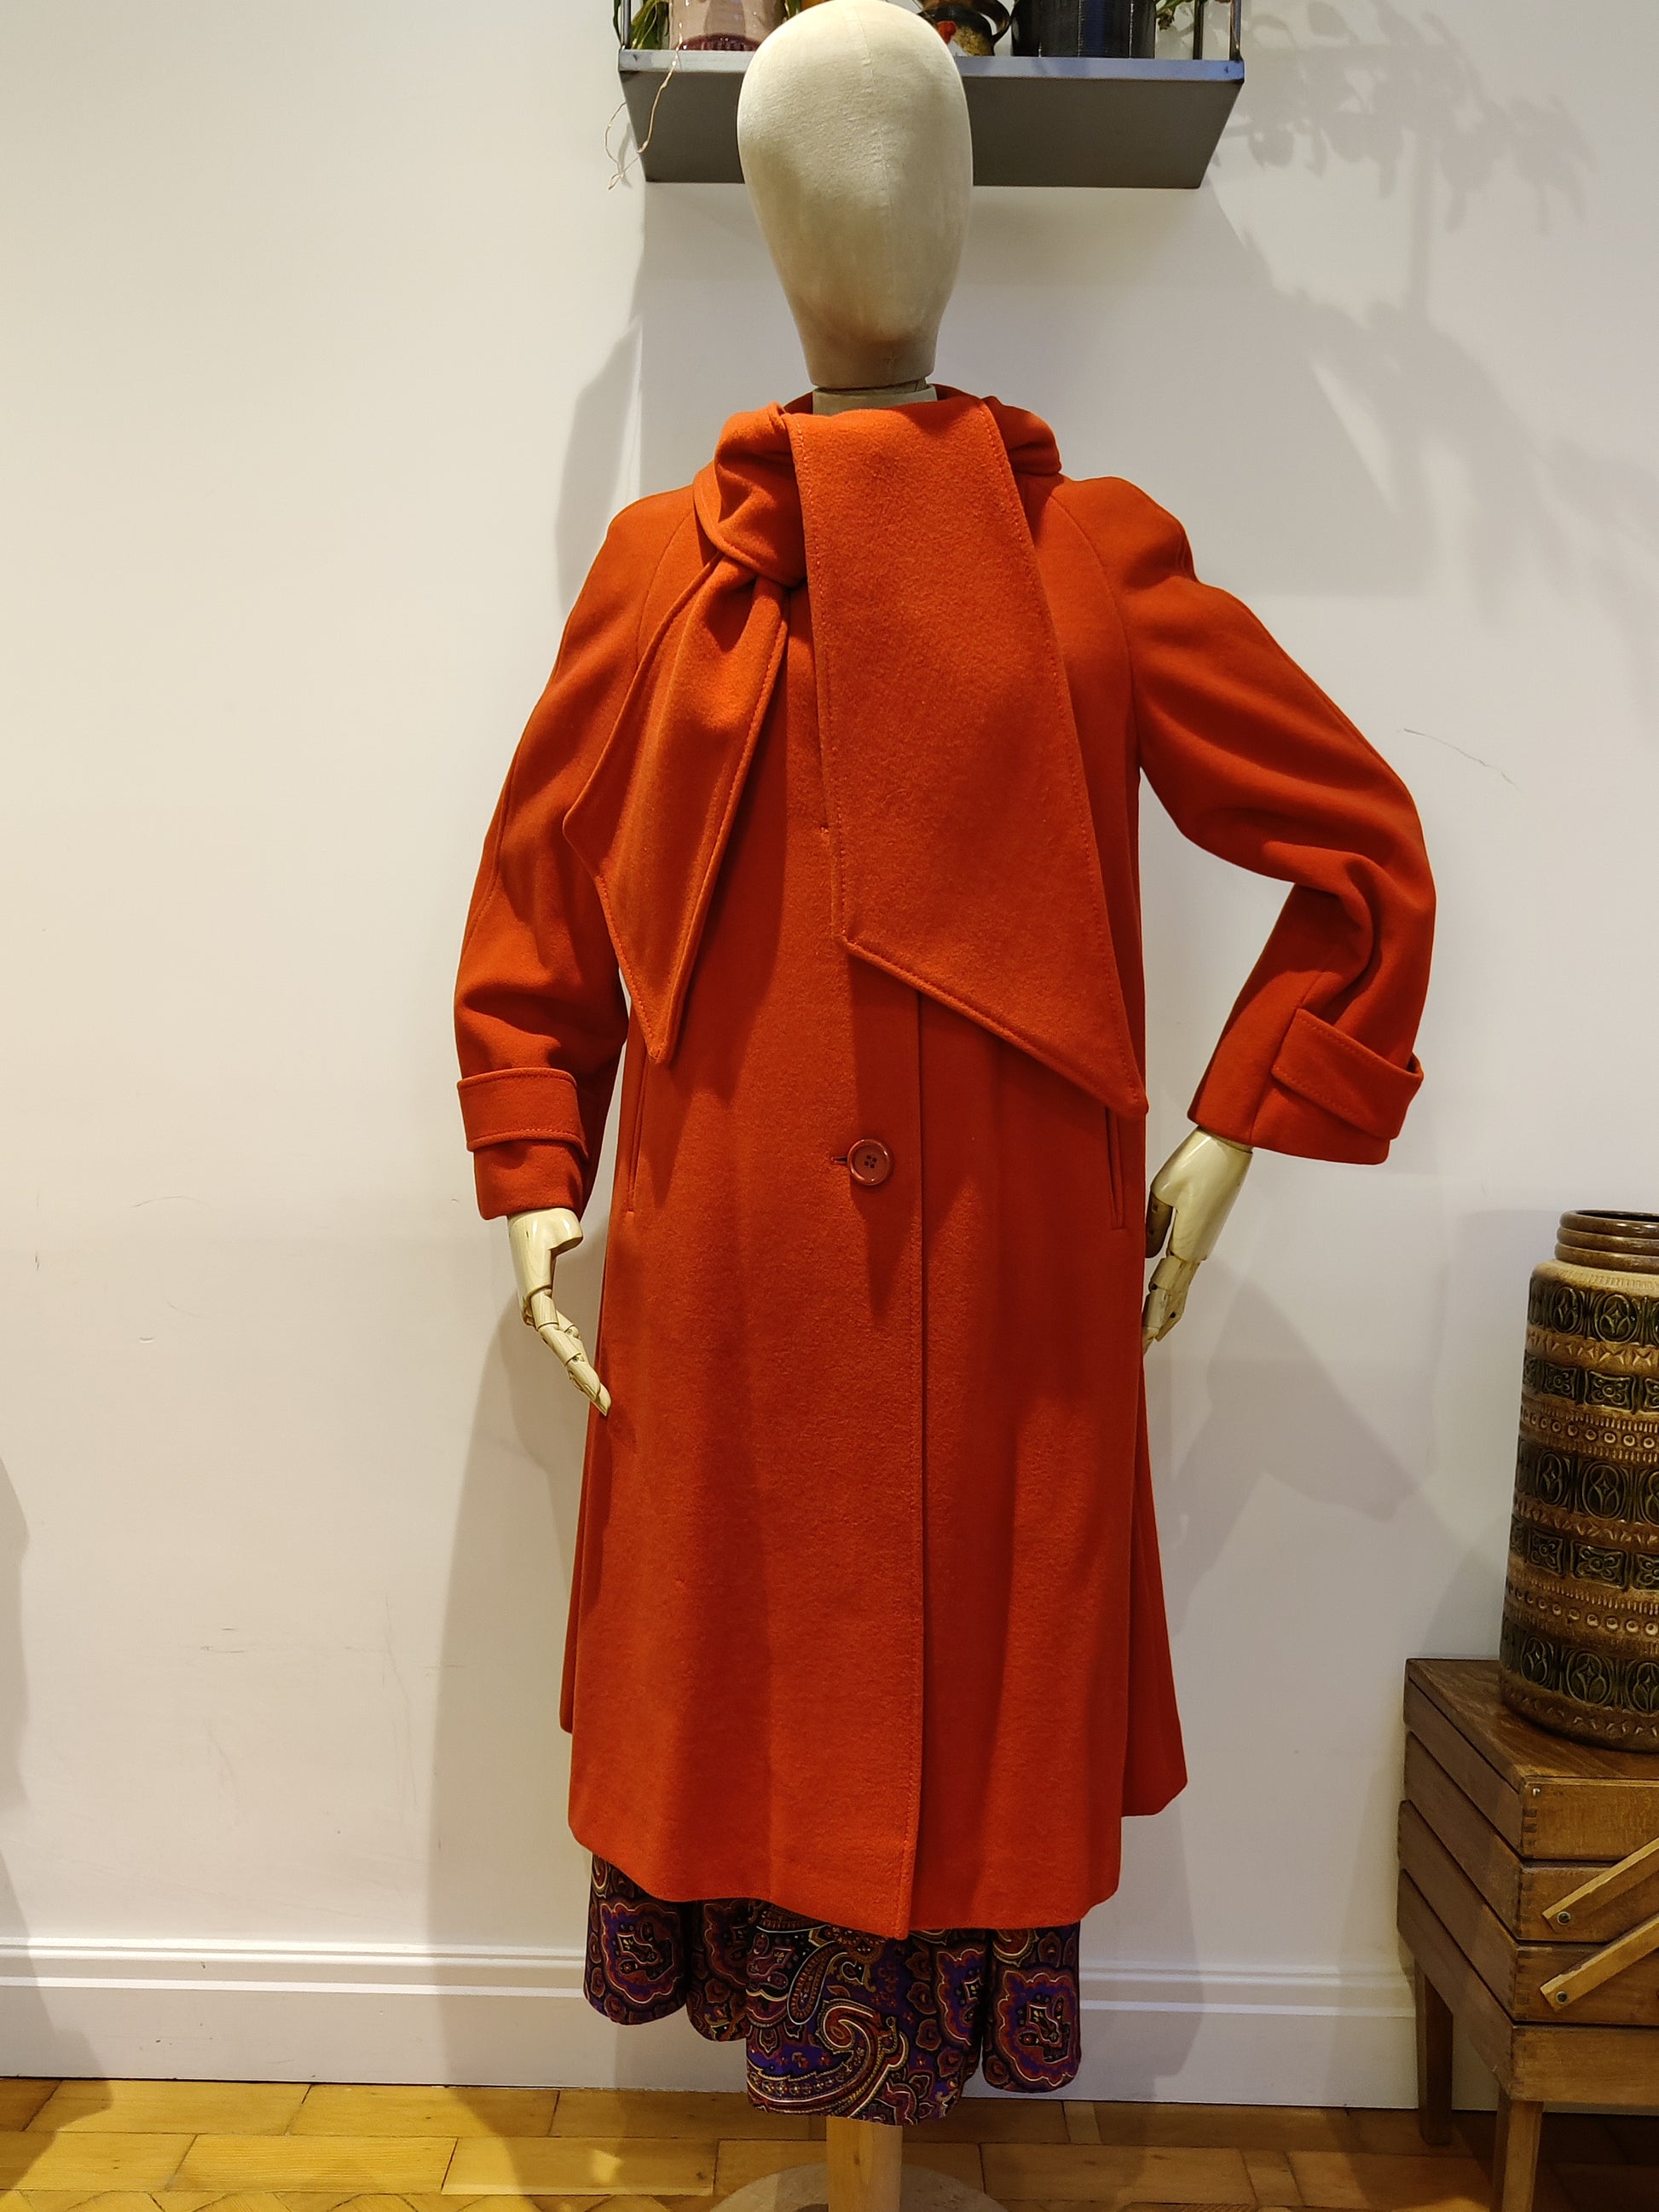 Red dress coat. vintage